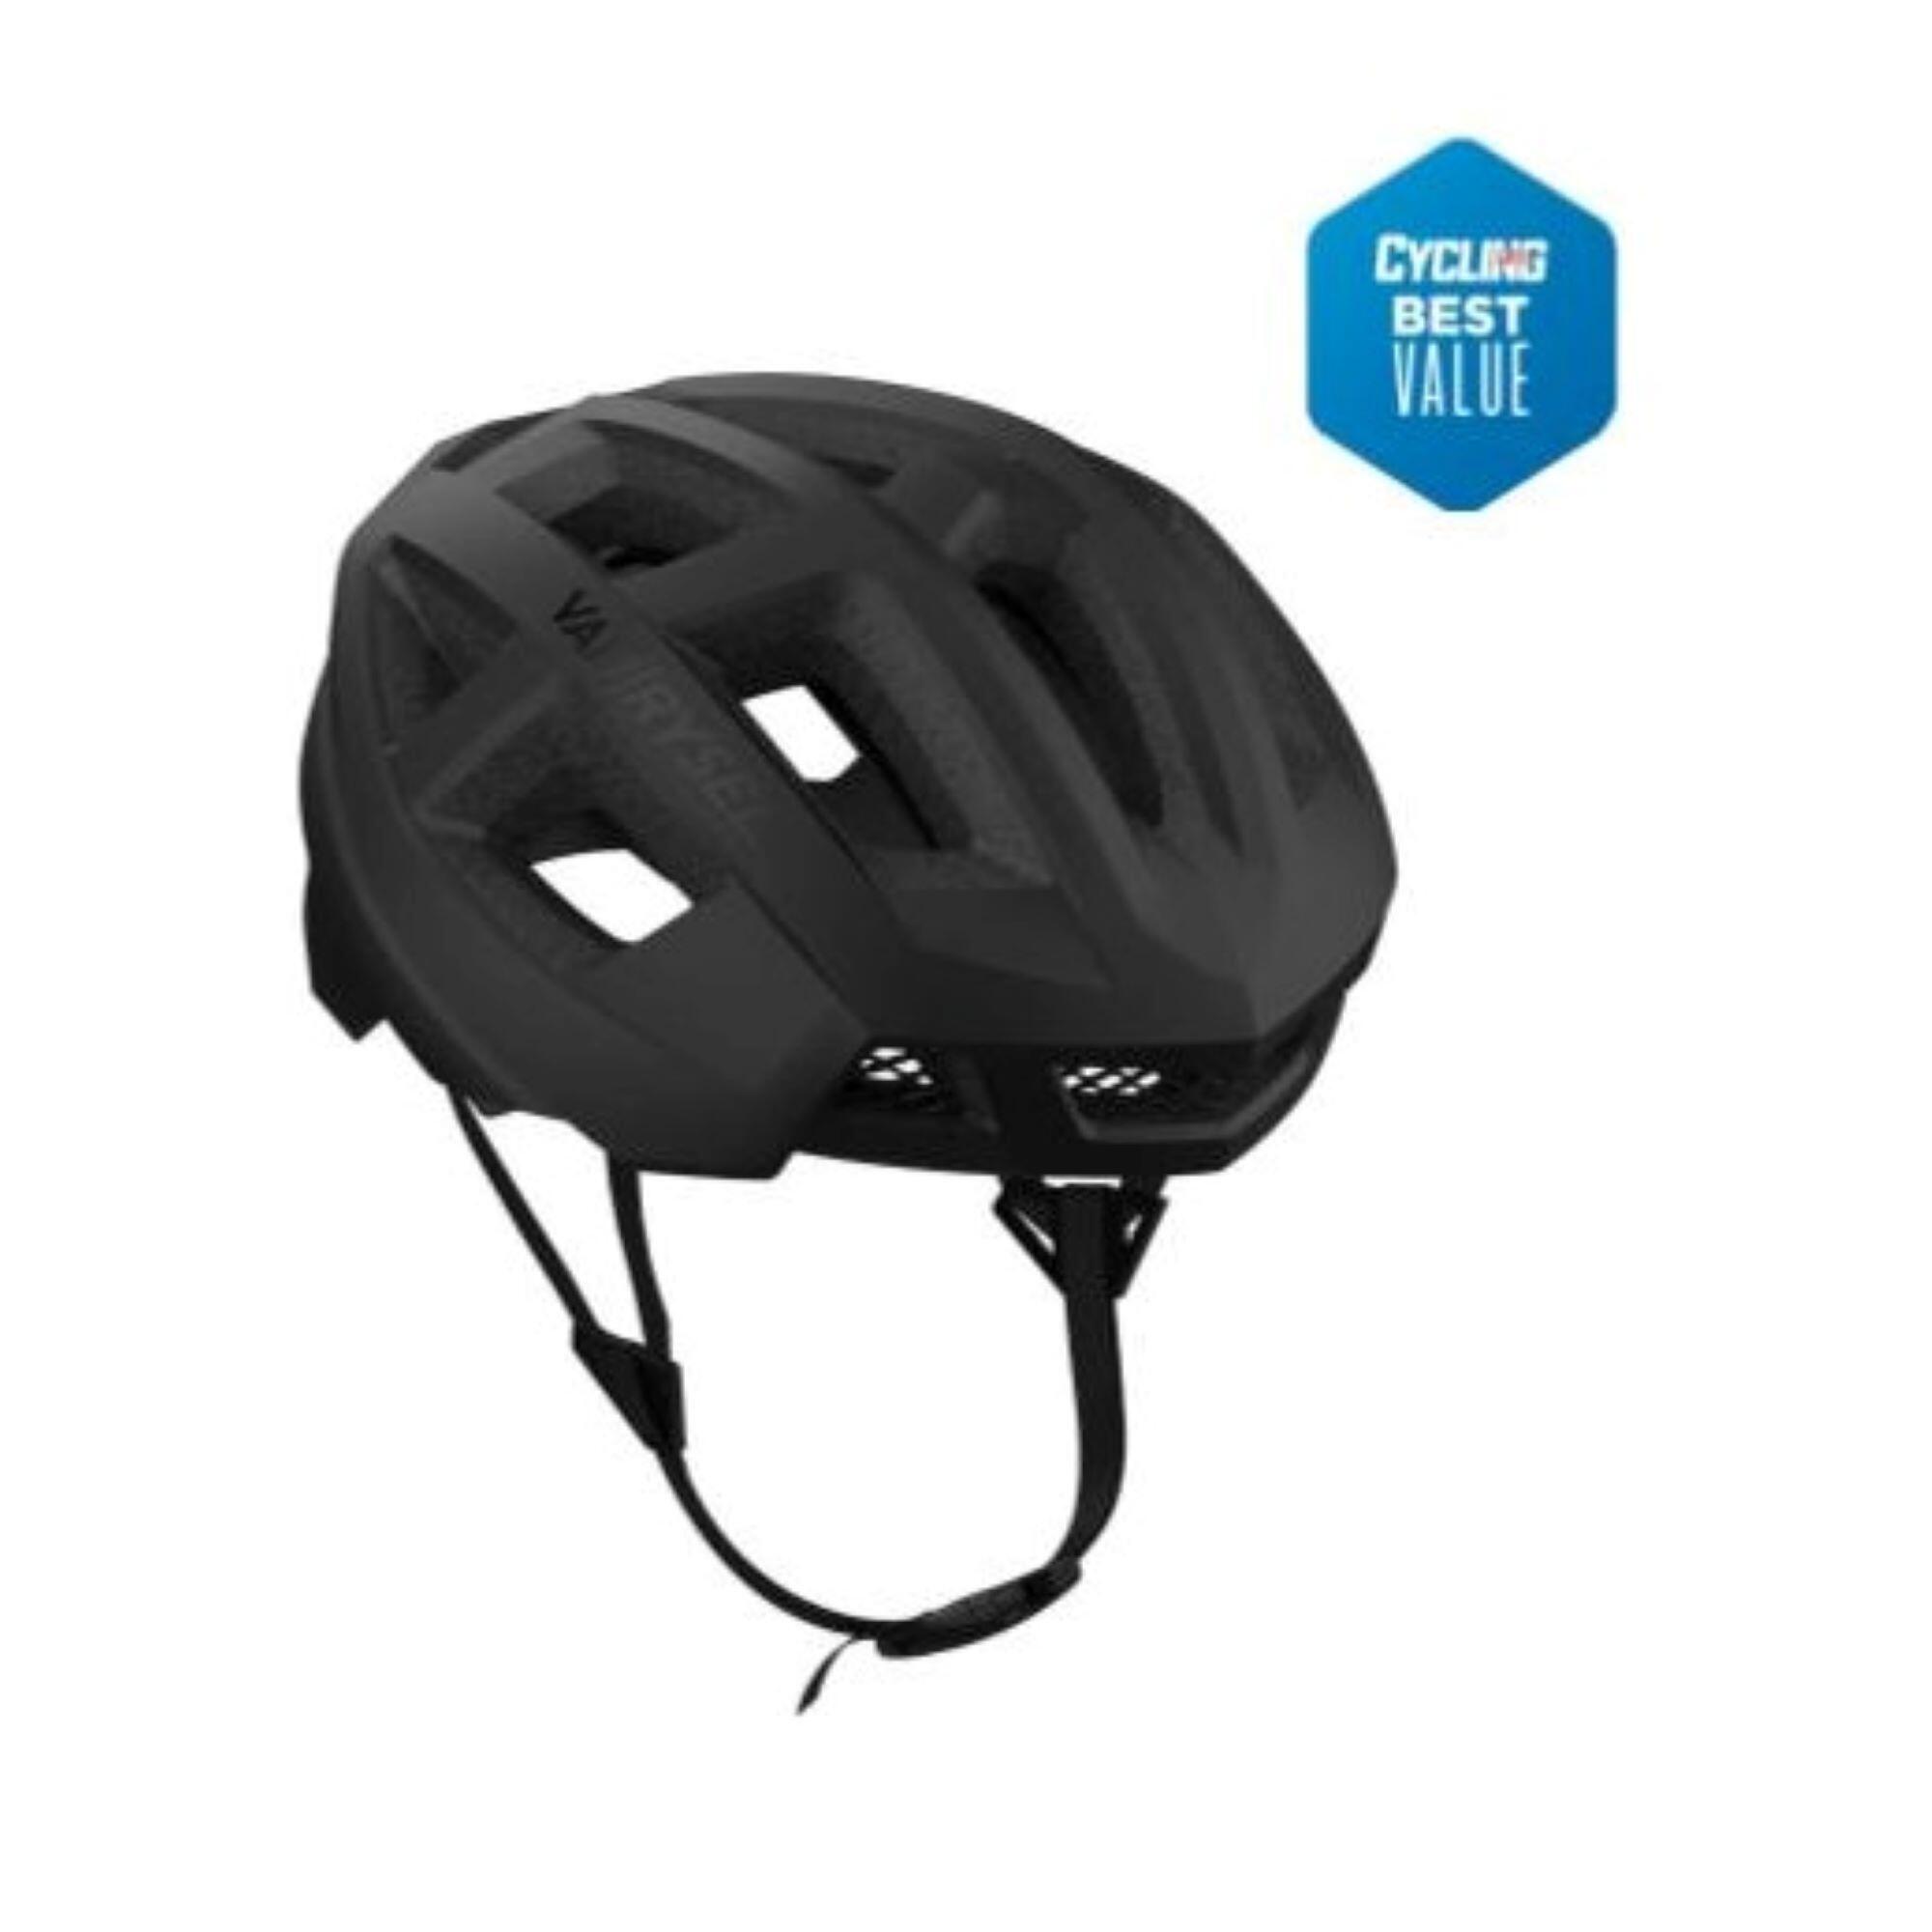 Racer Road Cycling Helmet - Black 1/7